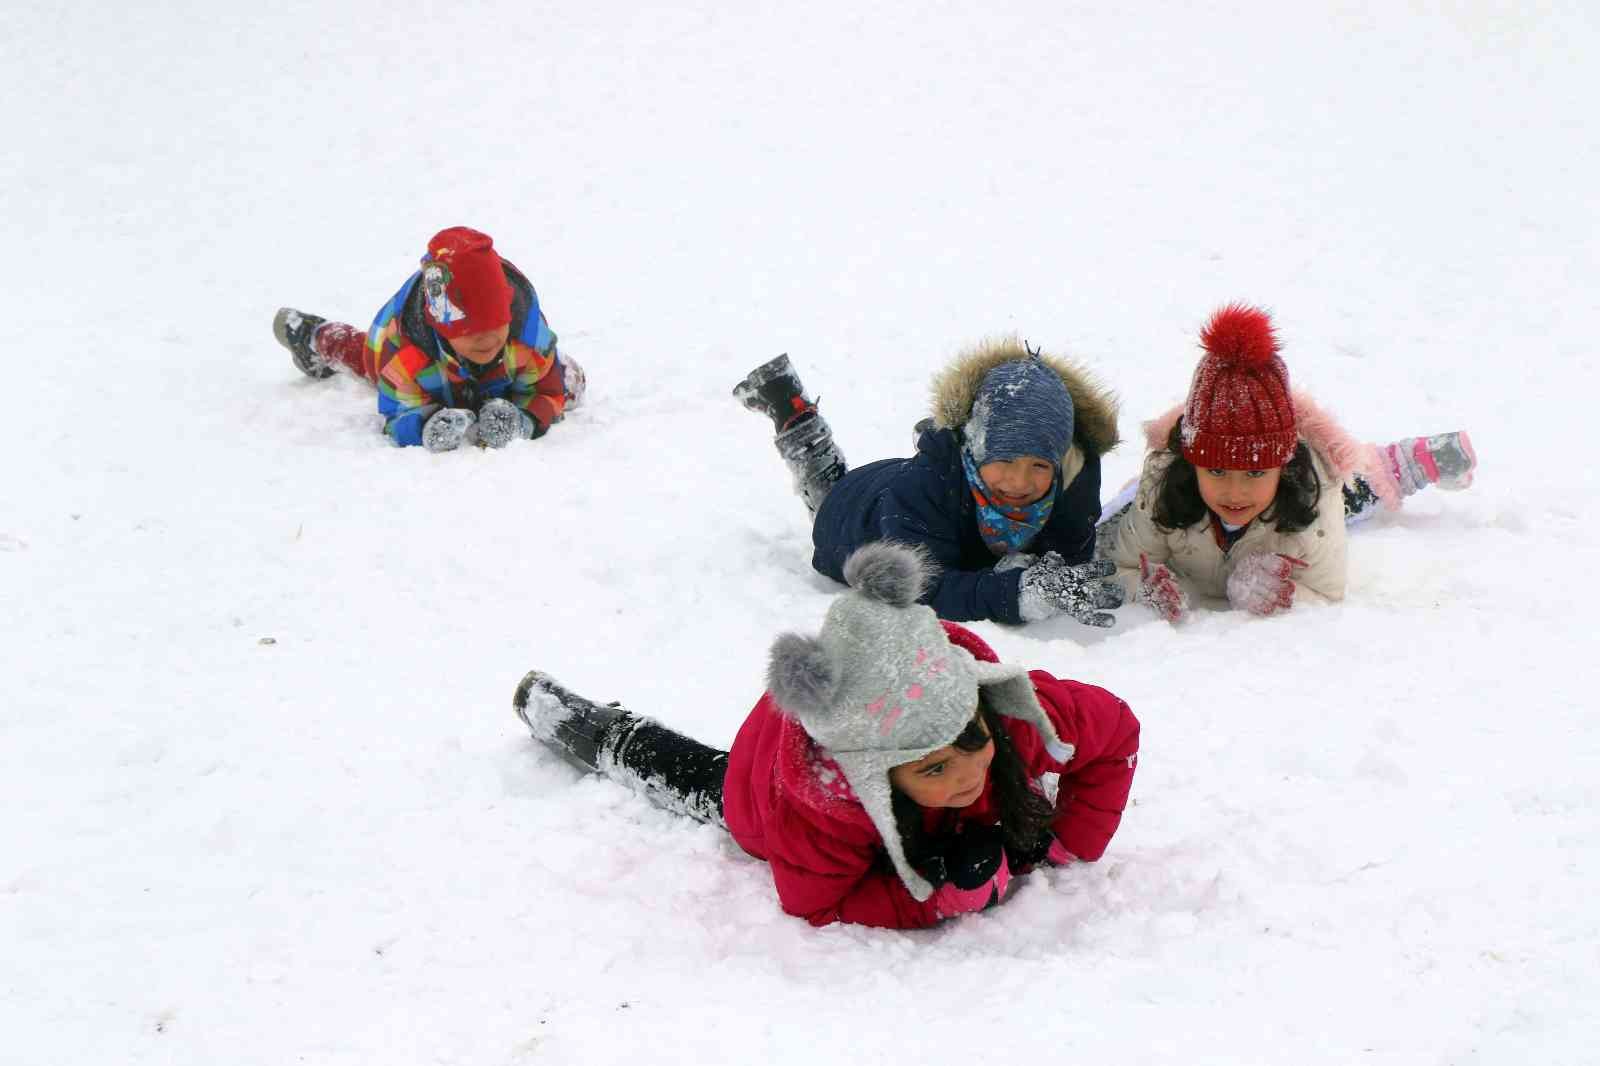 Bayburt’ta kar tatili 1 gün daha uzatıldı #bayburt